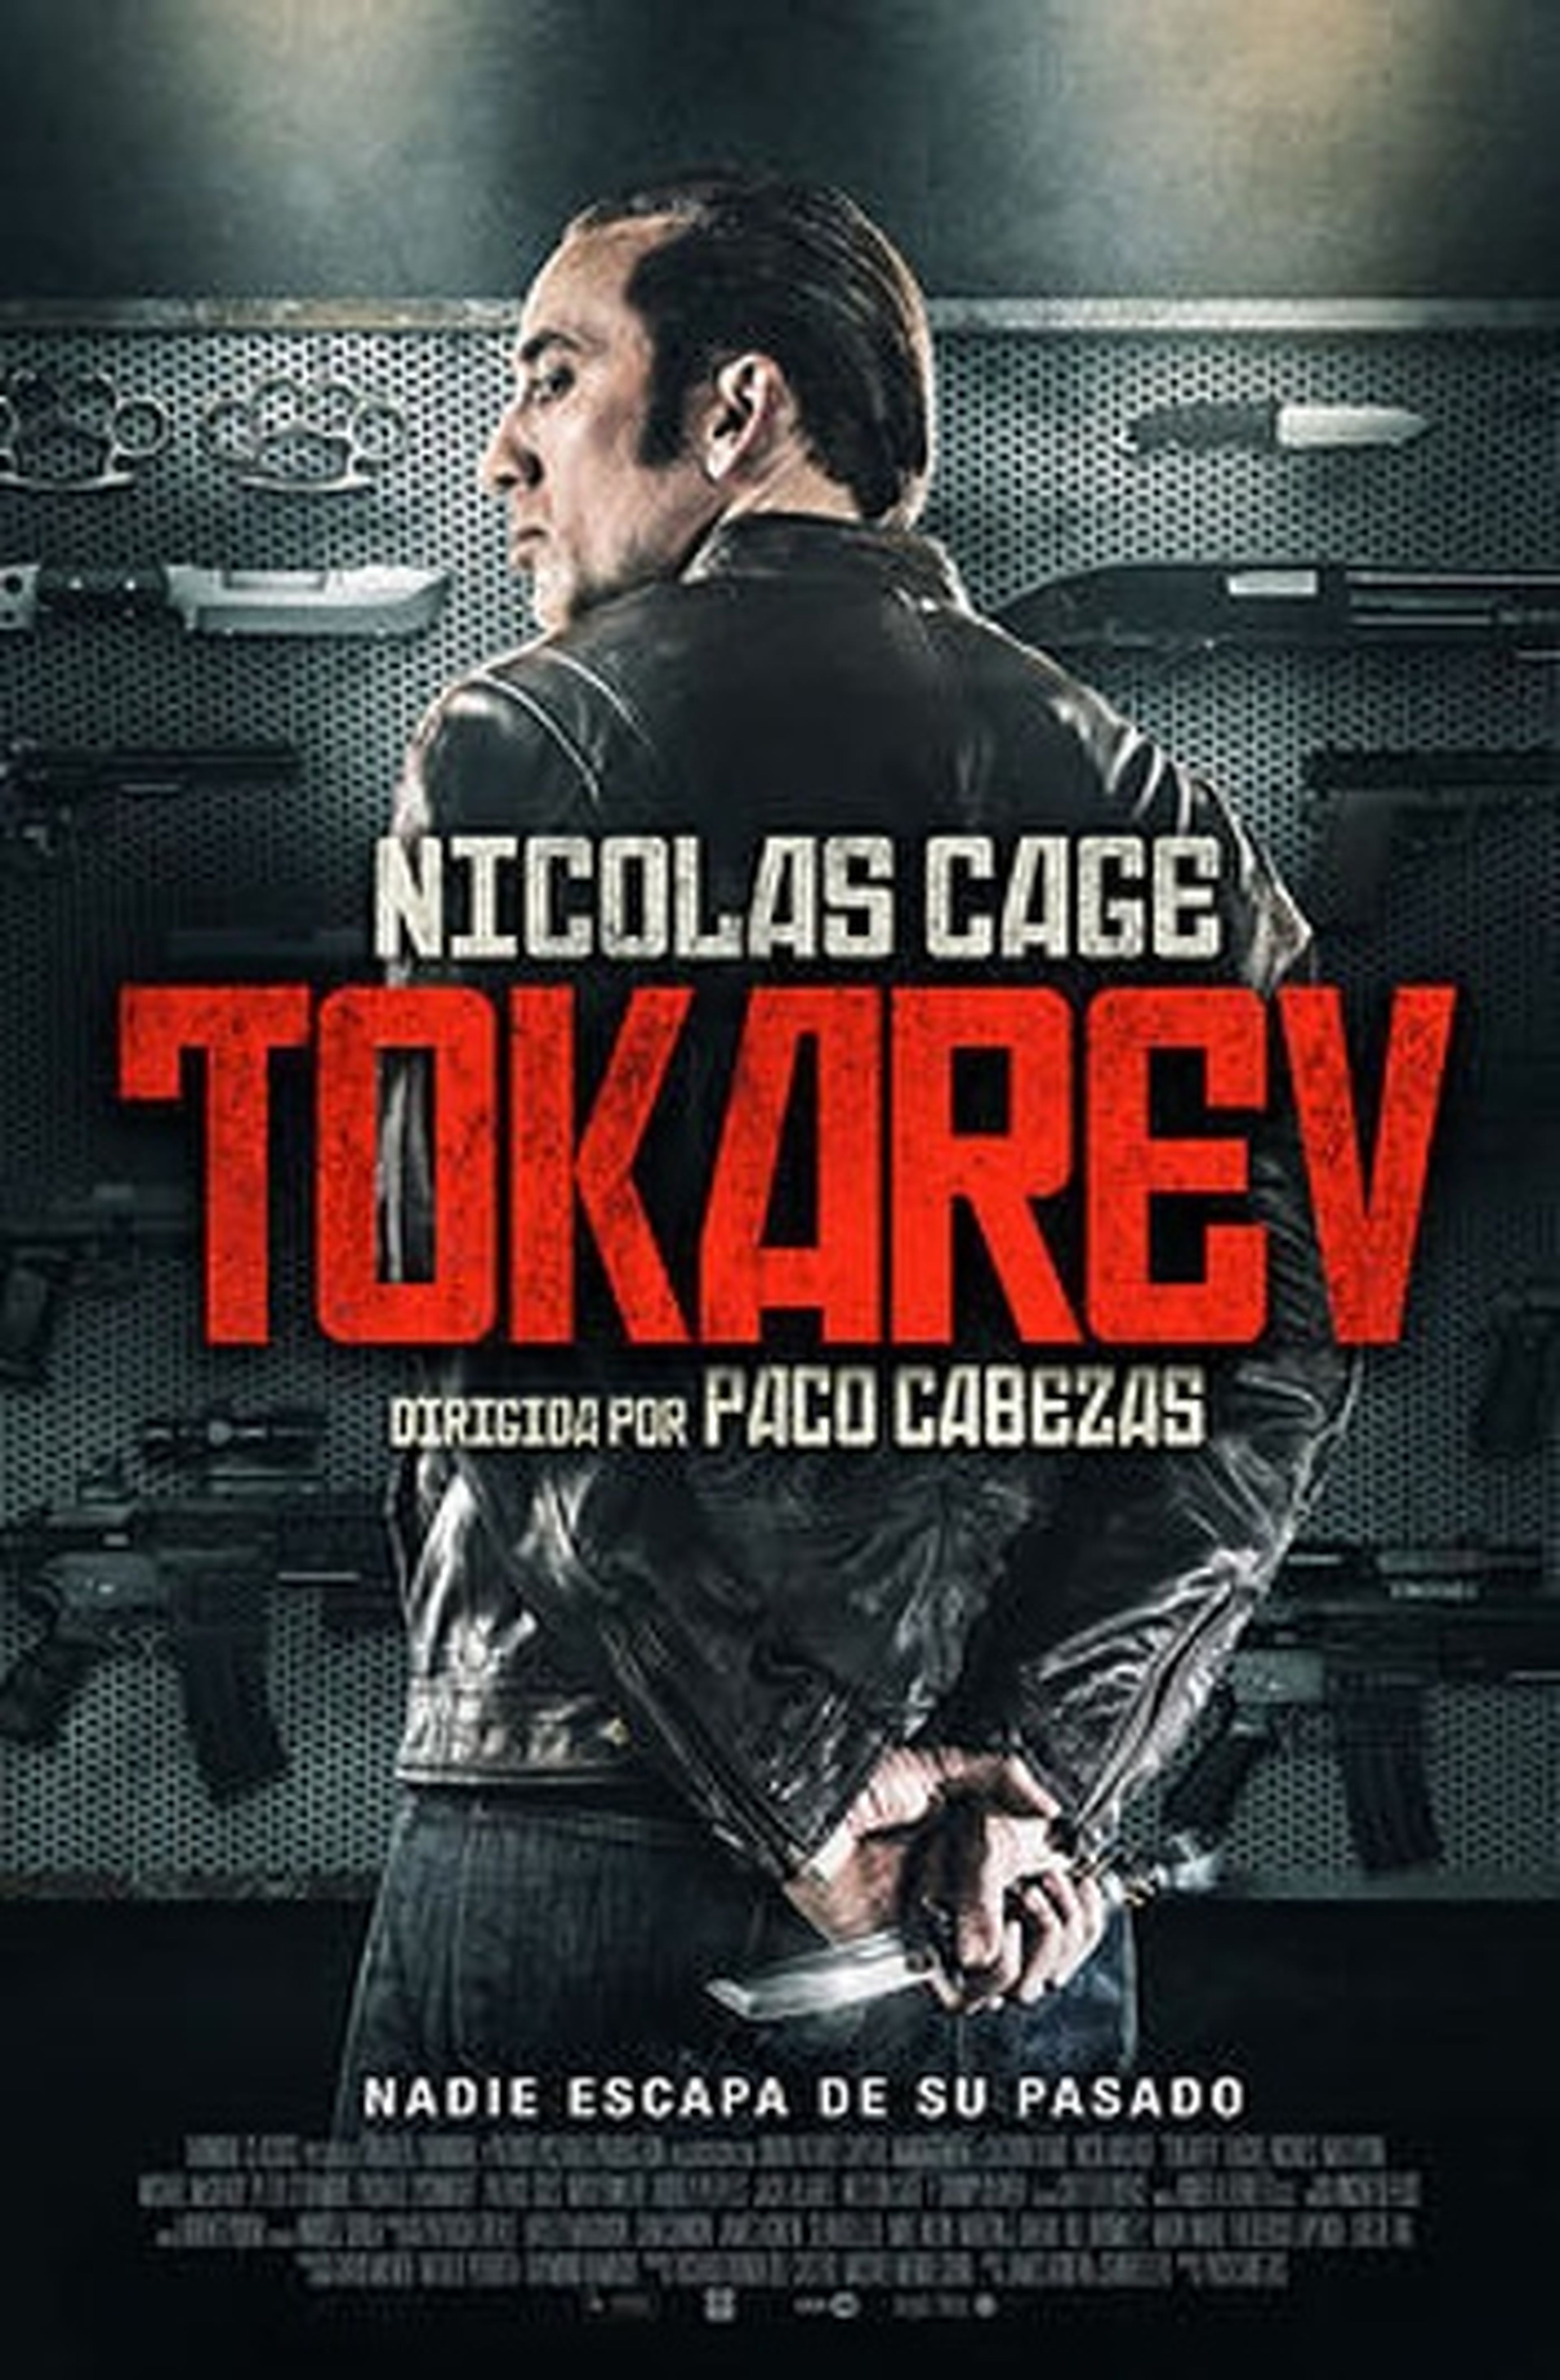 Cartel de Nicolas Cage en Tokarev y fecha de estreno